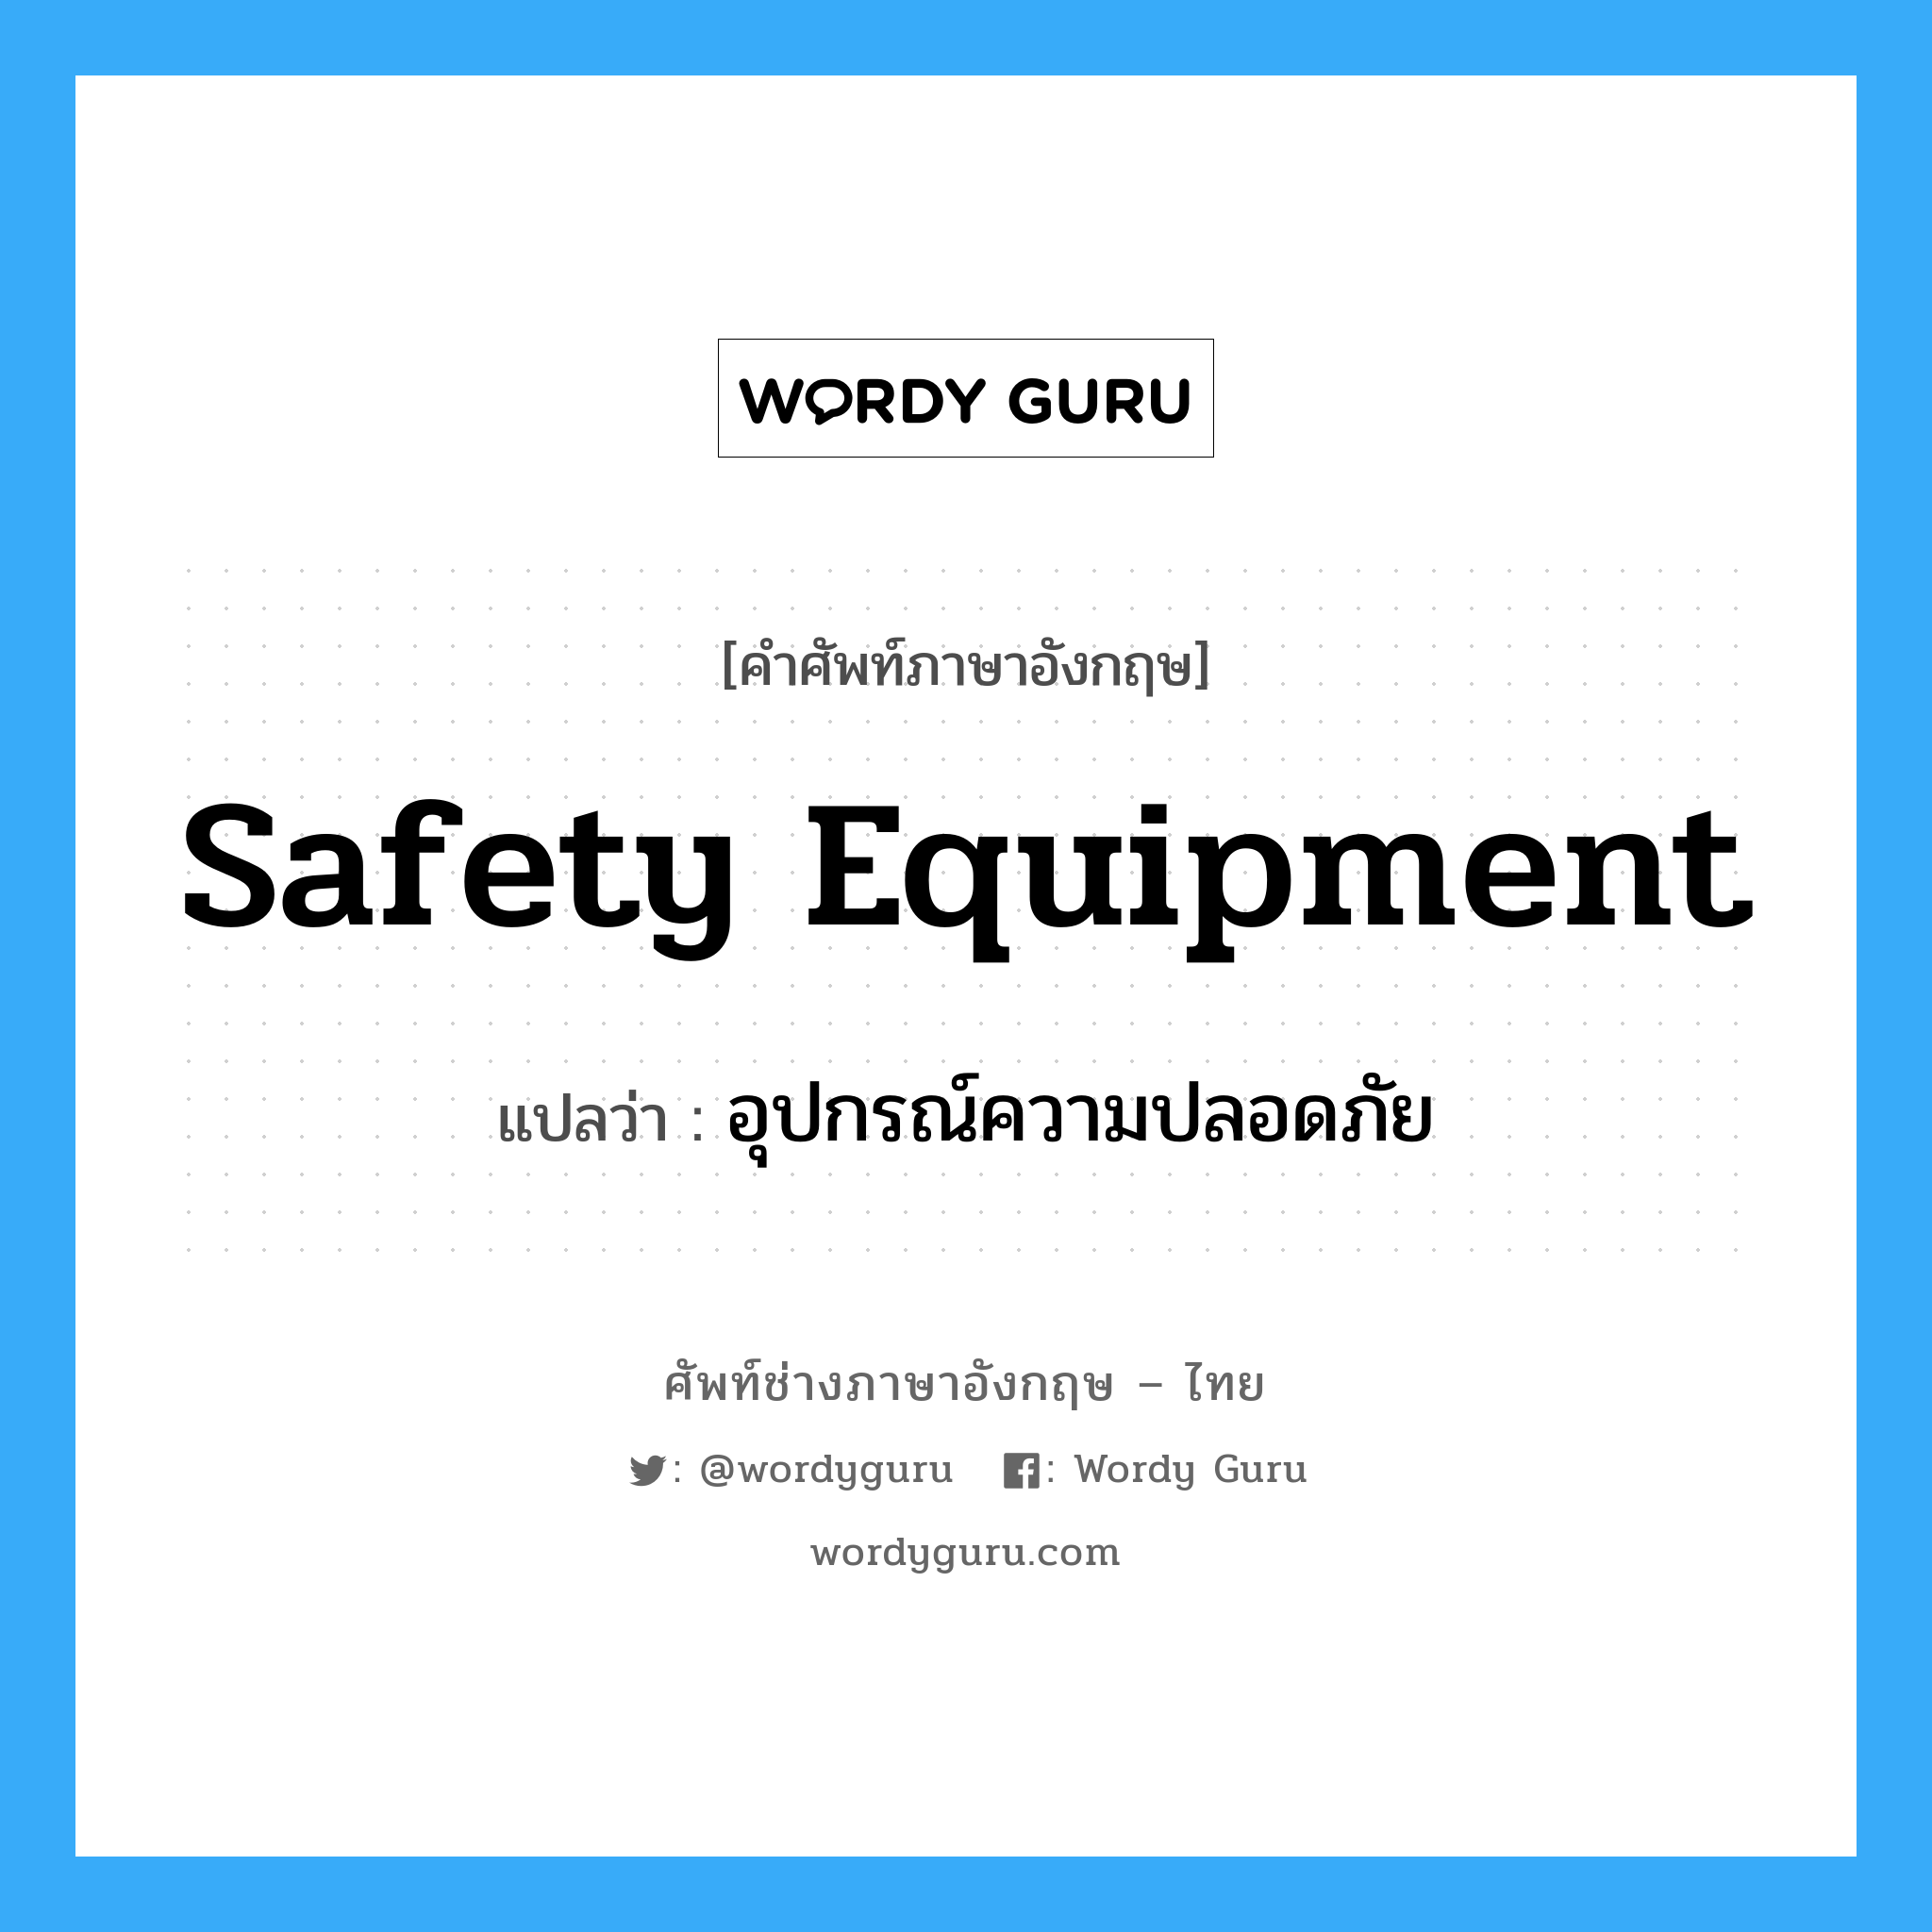 safety equipment แปลว่า?, คำศัพท์ช่างภาษาอังกฤษ - ไทย safety equipment คำศัพท์ภาษาอังกฤษ safety equipment แปลว่า อุปกรณ์ความปลอดภัย